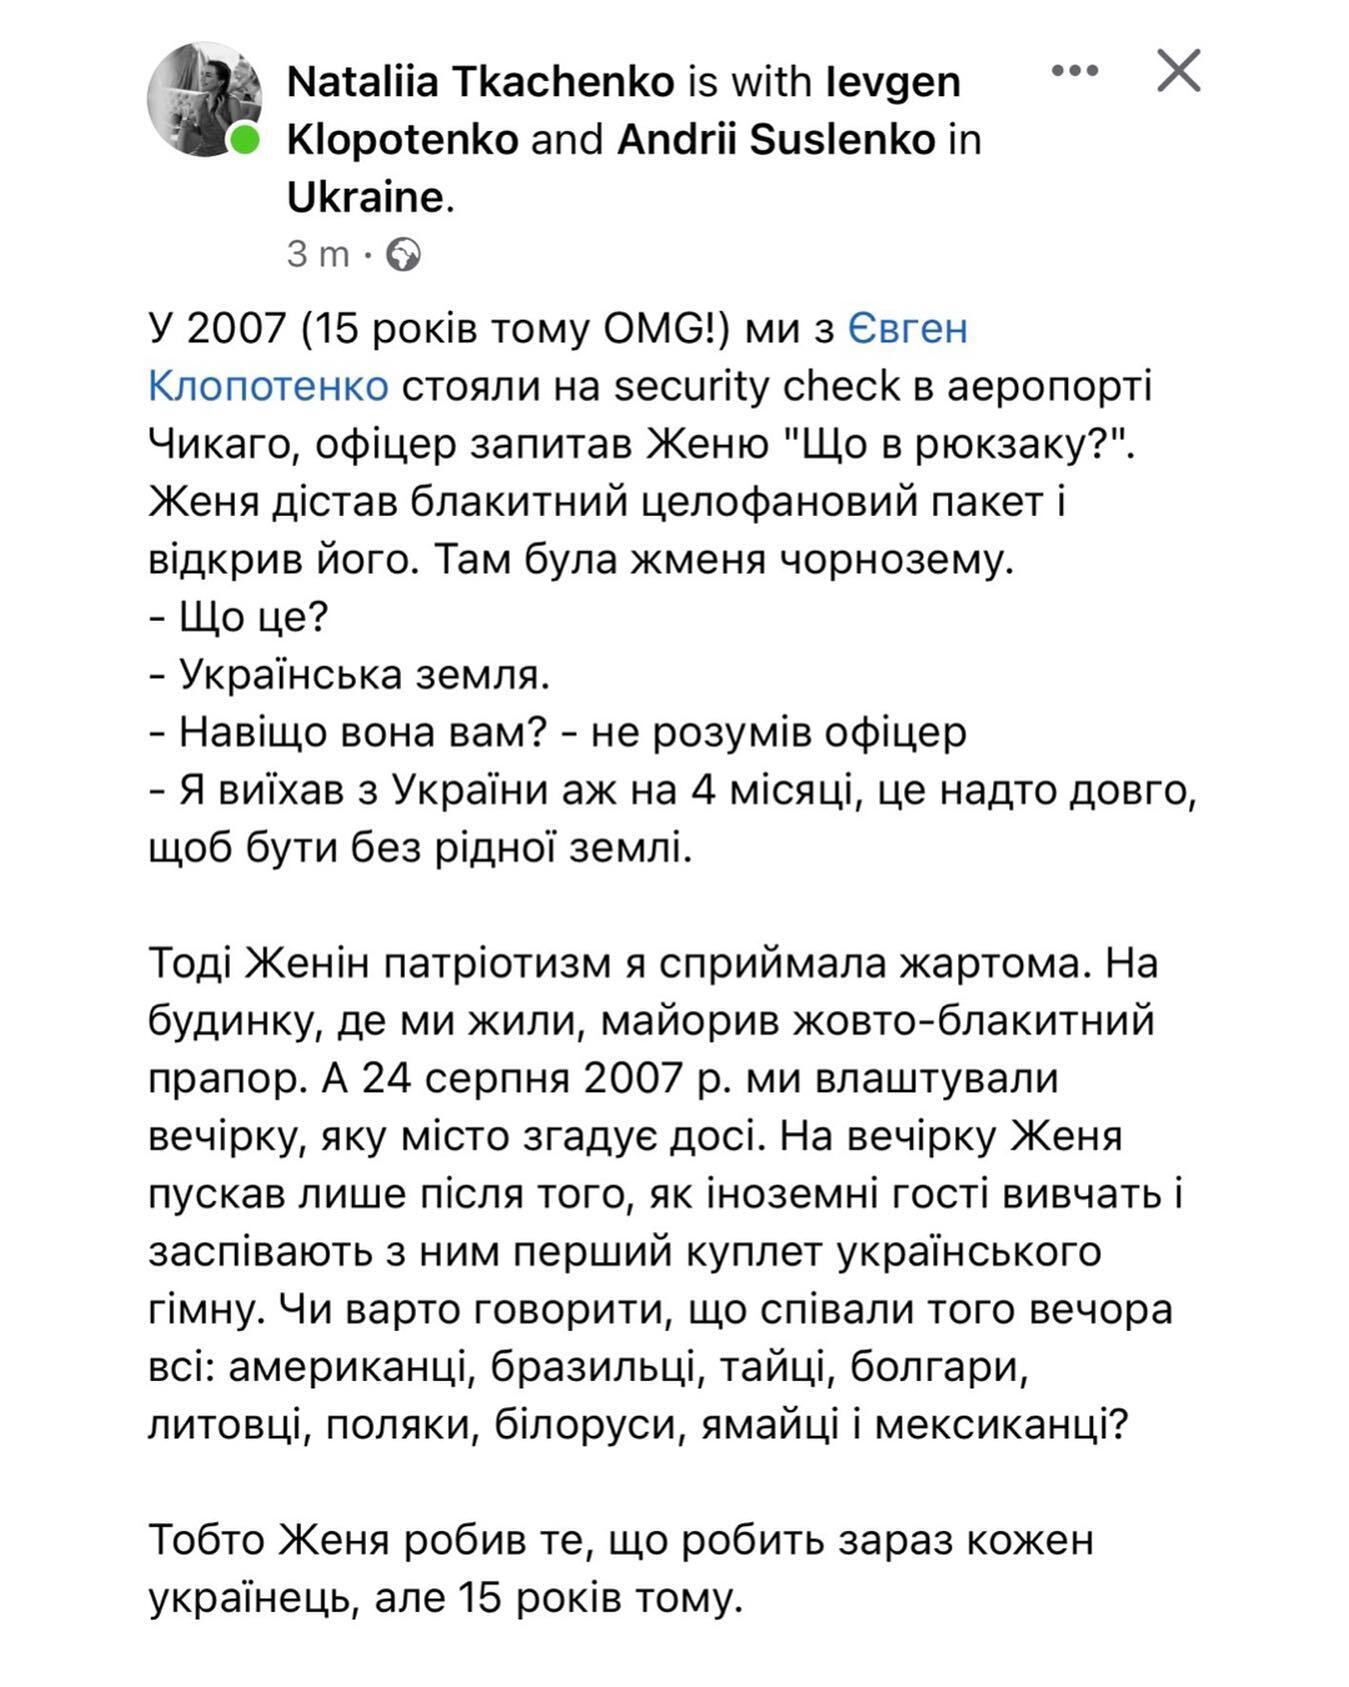 Євген Клопотенко у 2007 році змушував іноземців вчити гімн України і возив чорнозем у США